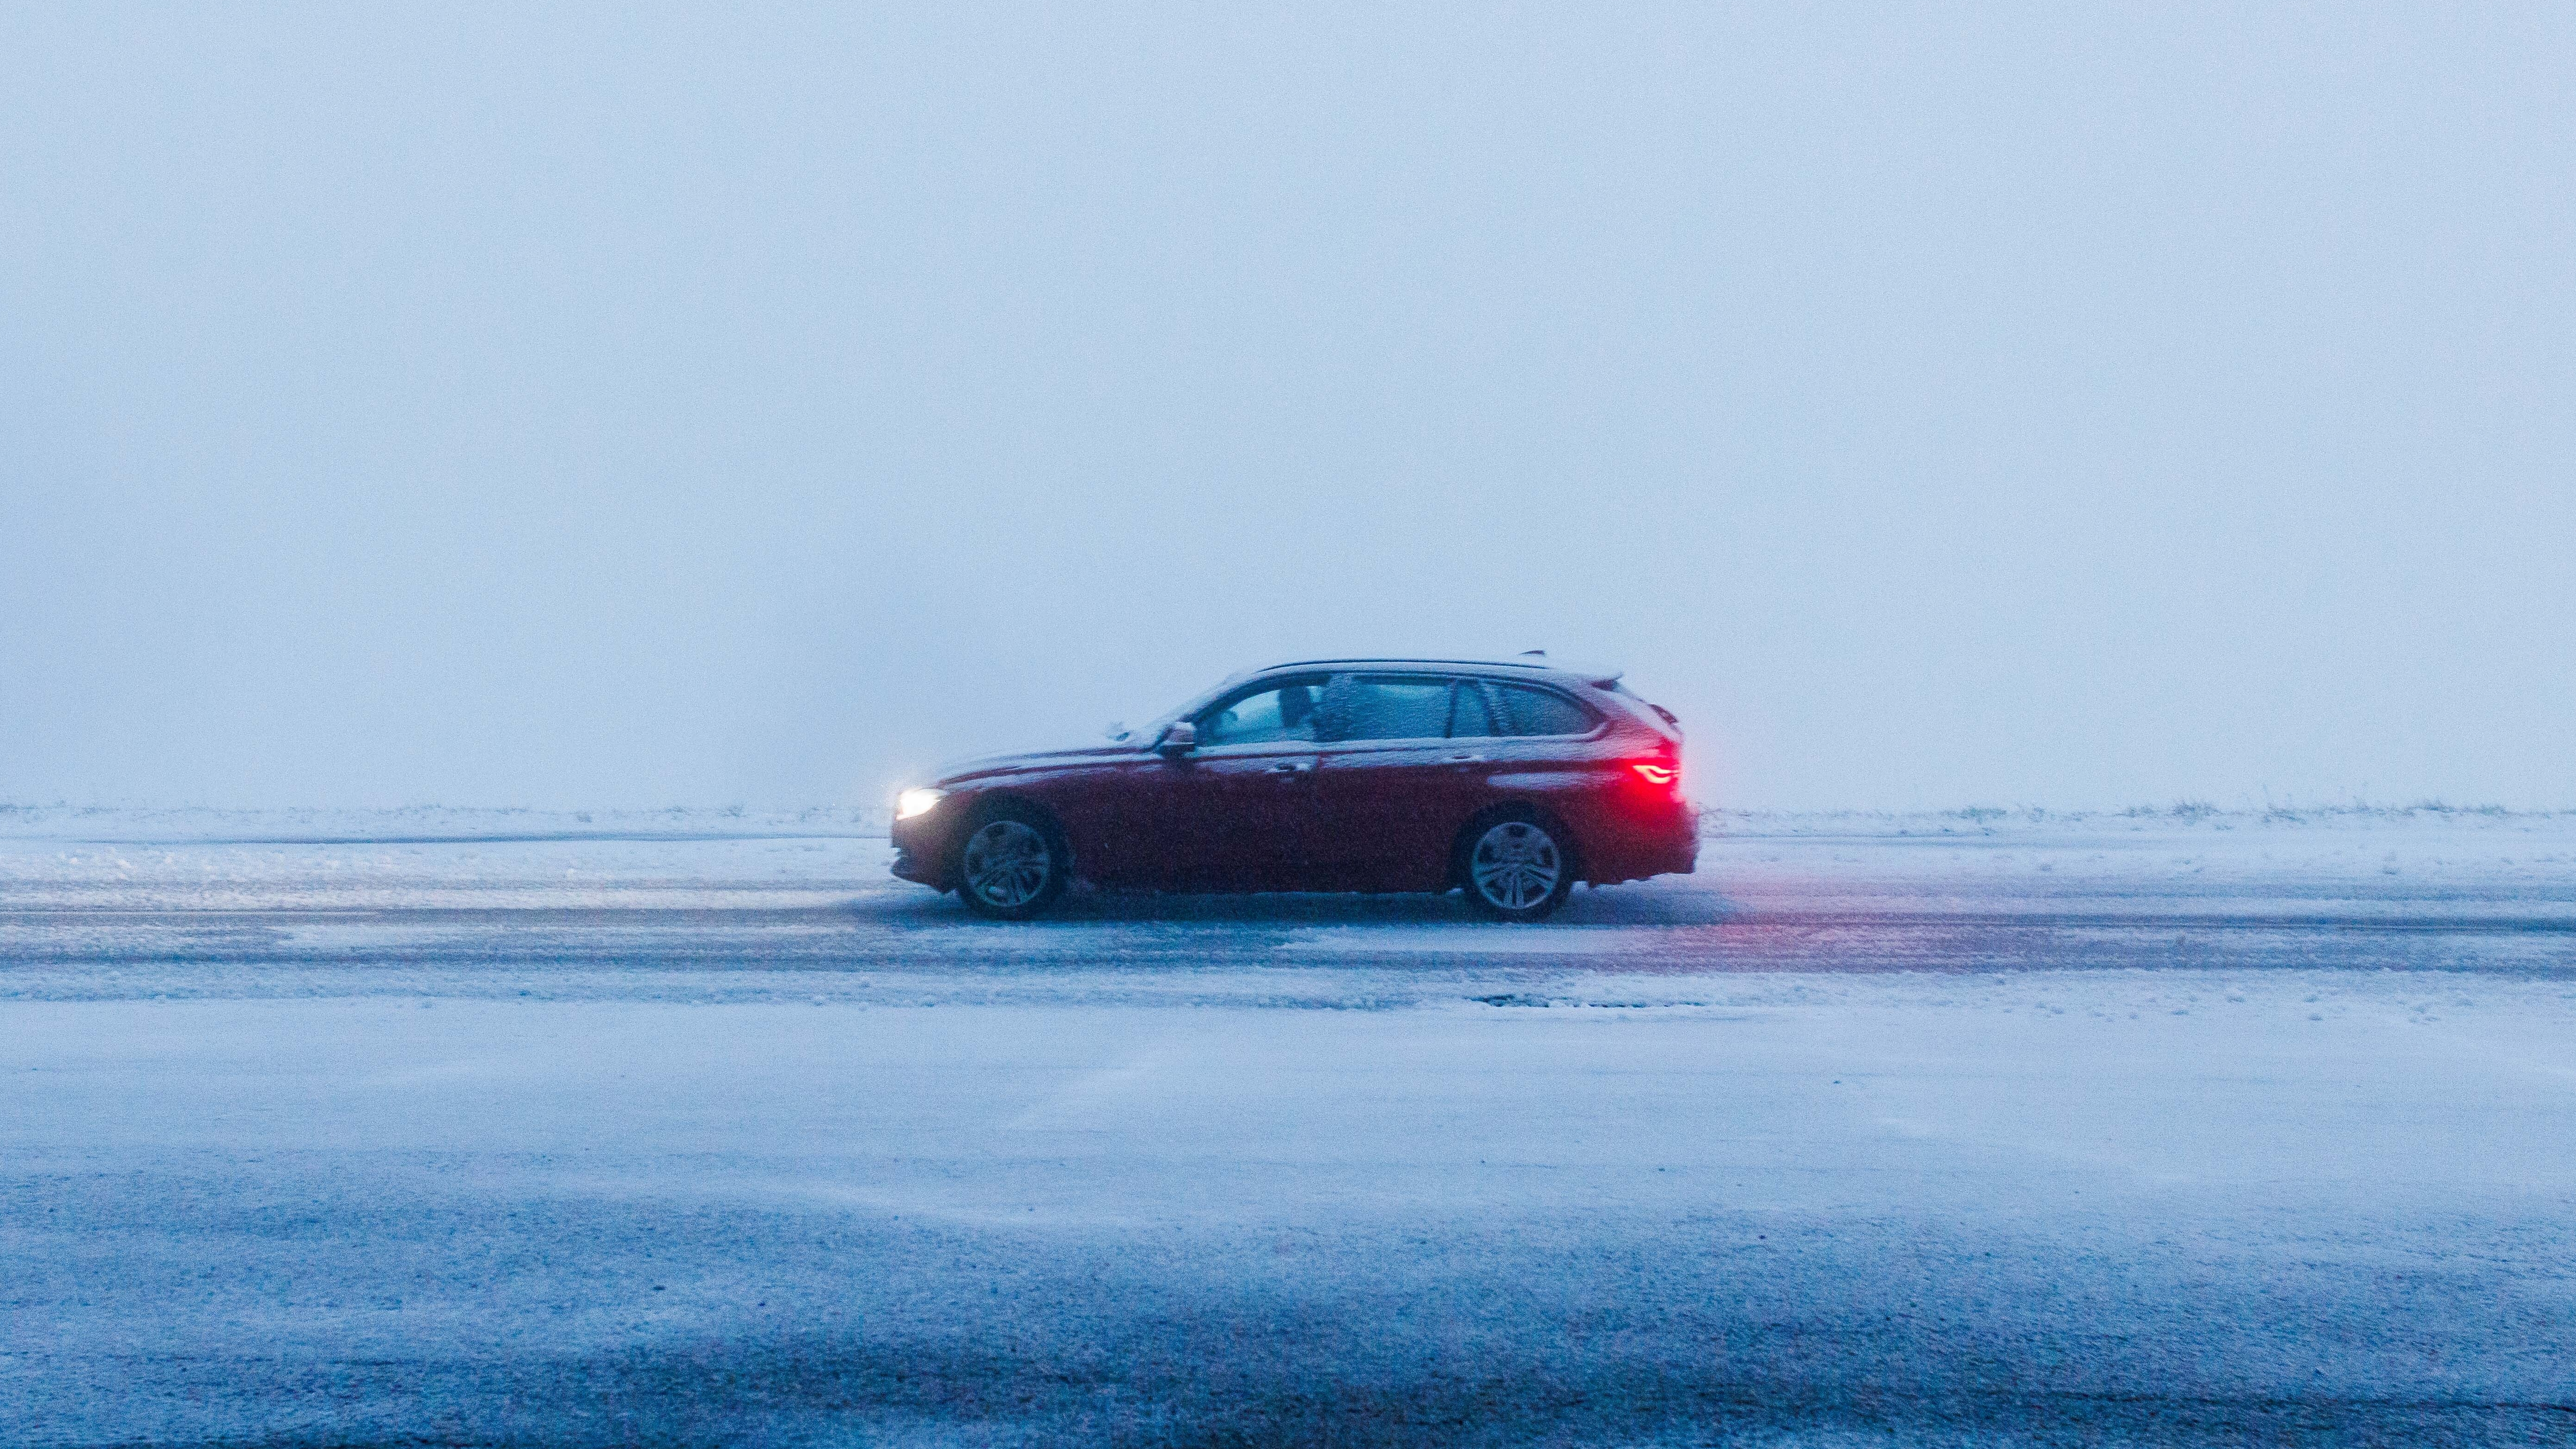 Auto im Winter: Fahren auf Eis und Schnee – Tipps vom Rallye-Weltmeister